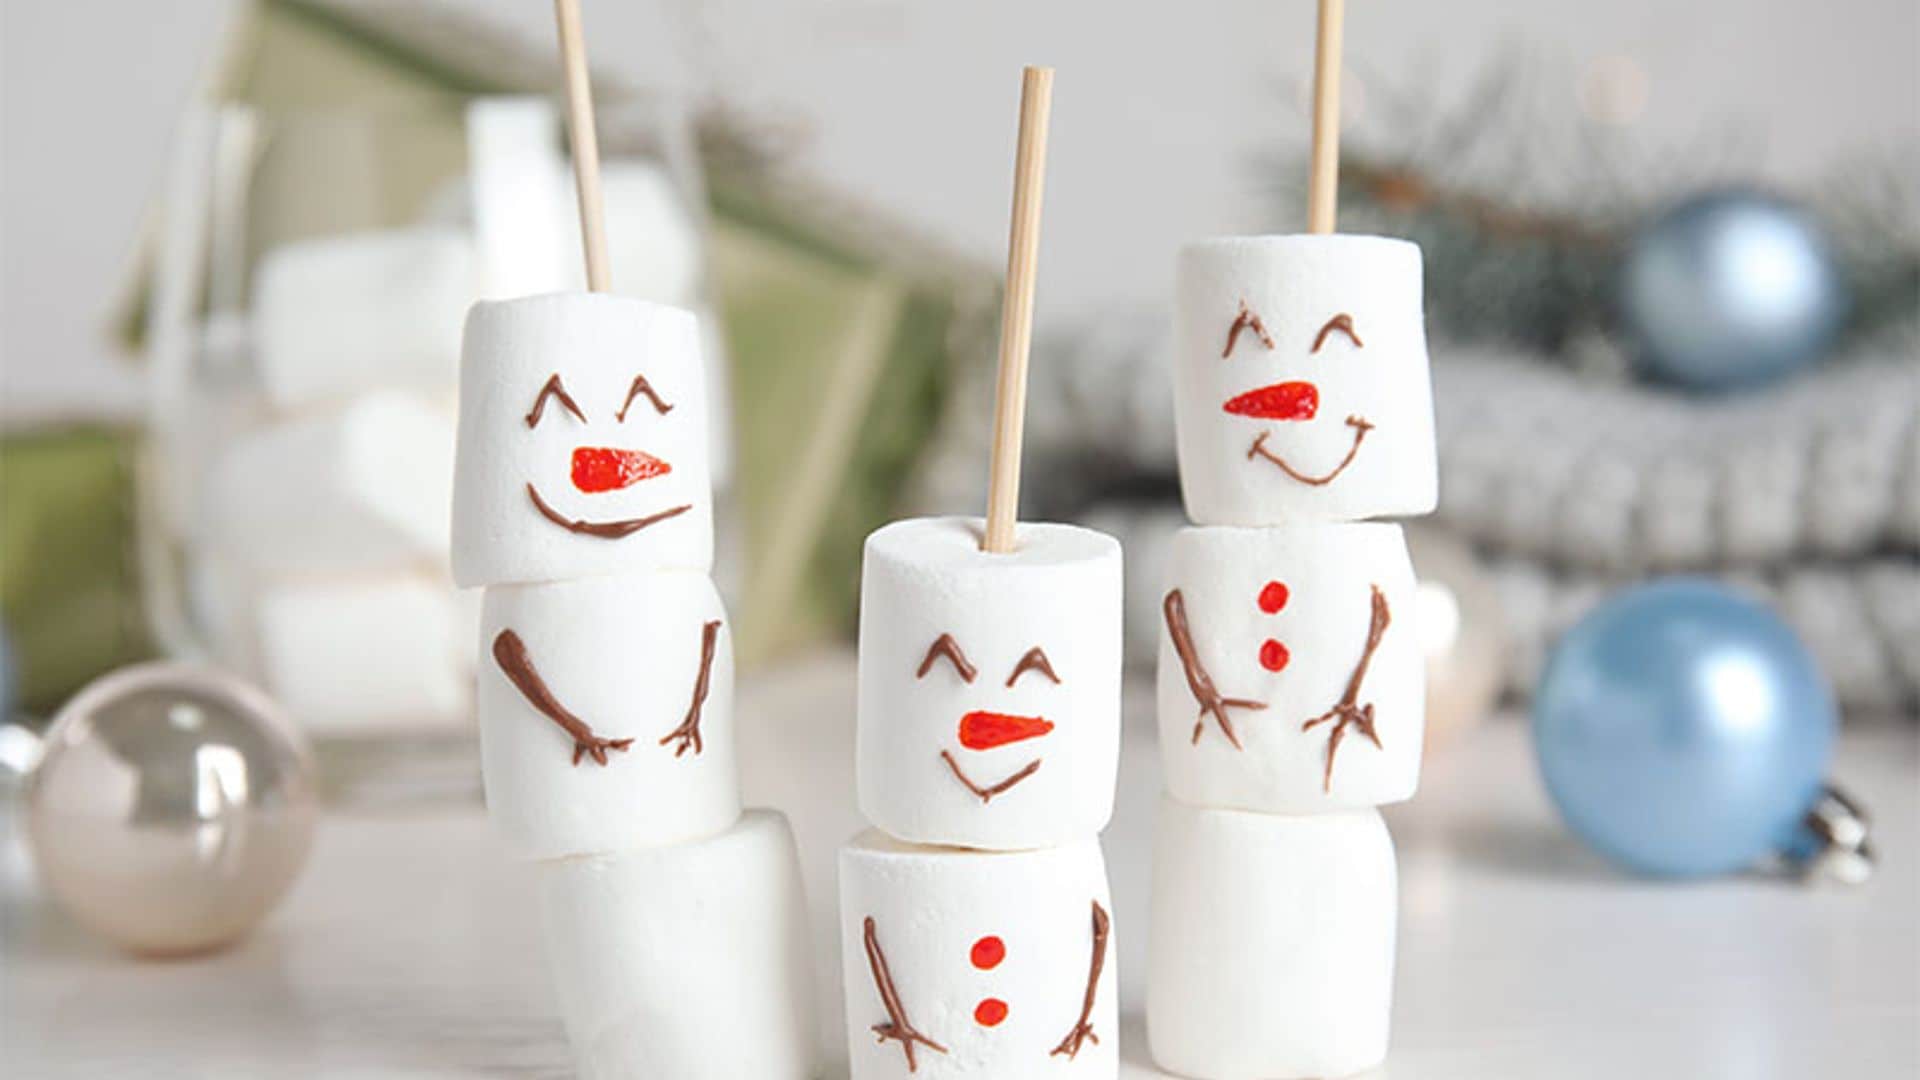 Muñecos de 'marshmallows'